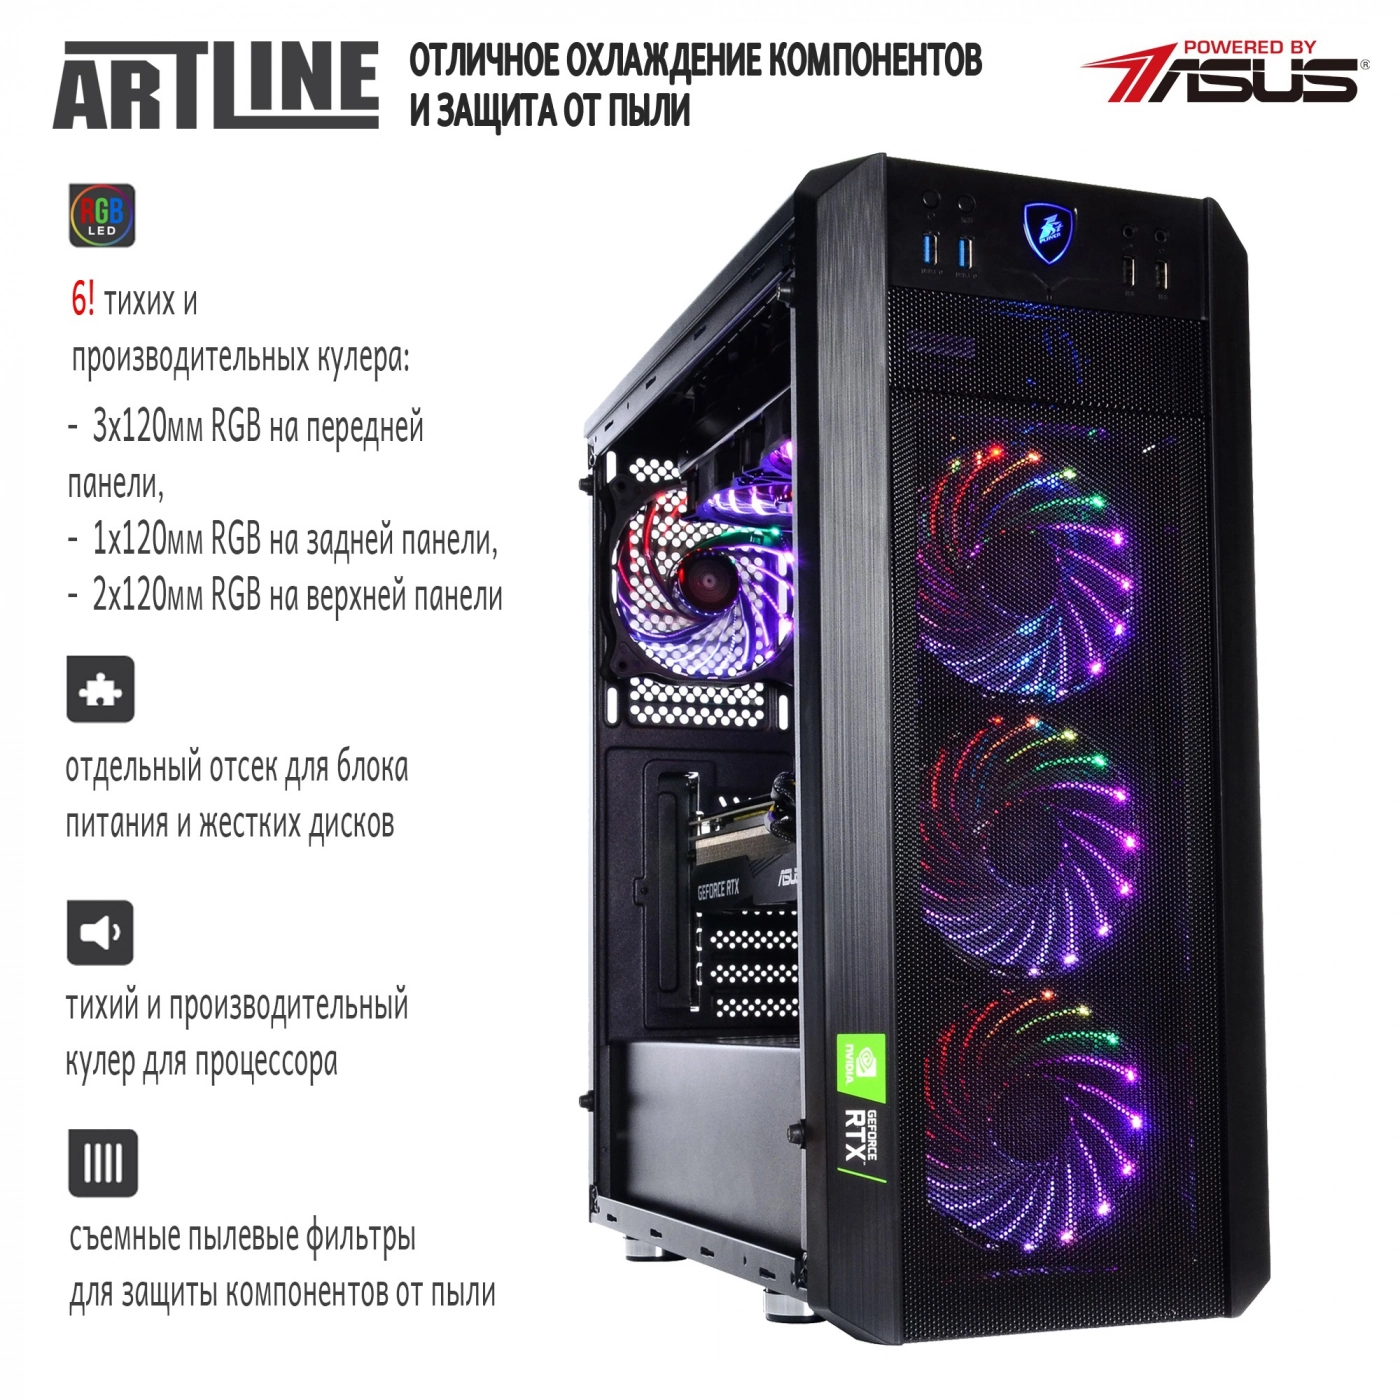 Купить Компьютер ARTLINE Gaming X97v38 - фото 2